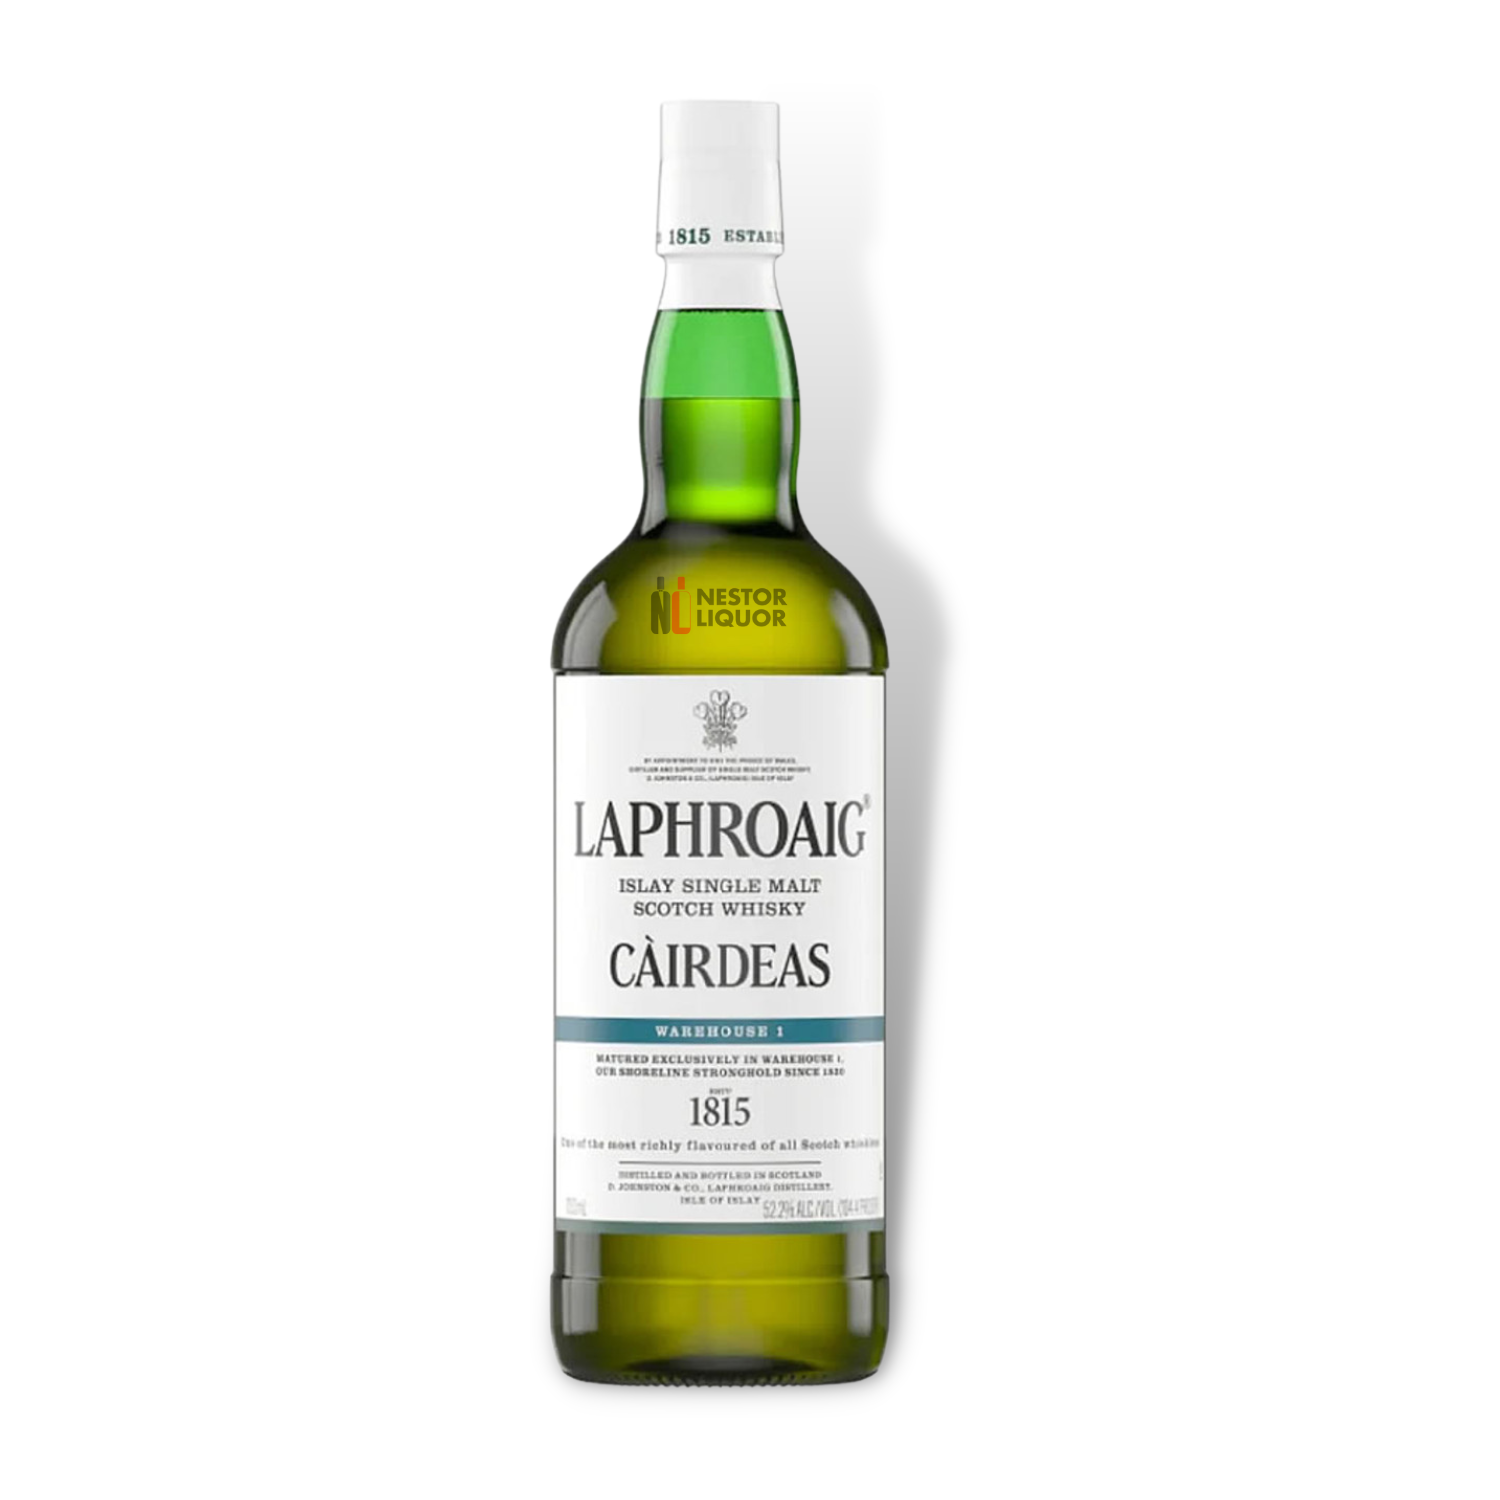 Laphroaig Cairdeas Warehouse 1 750ml_nestor liquor